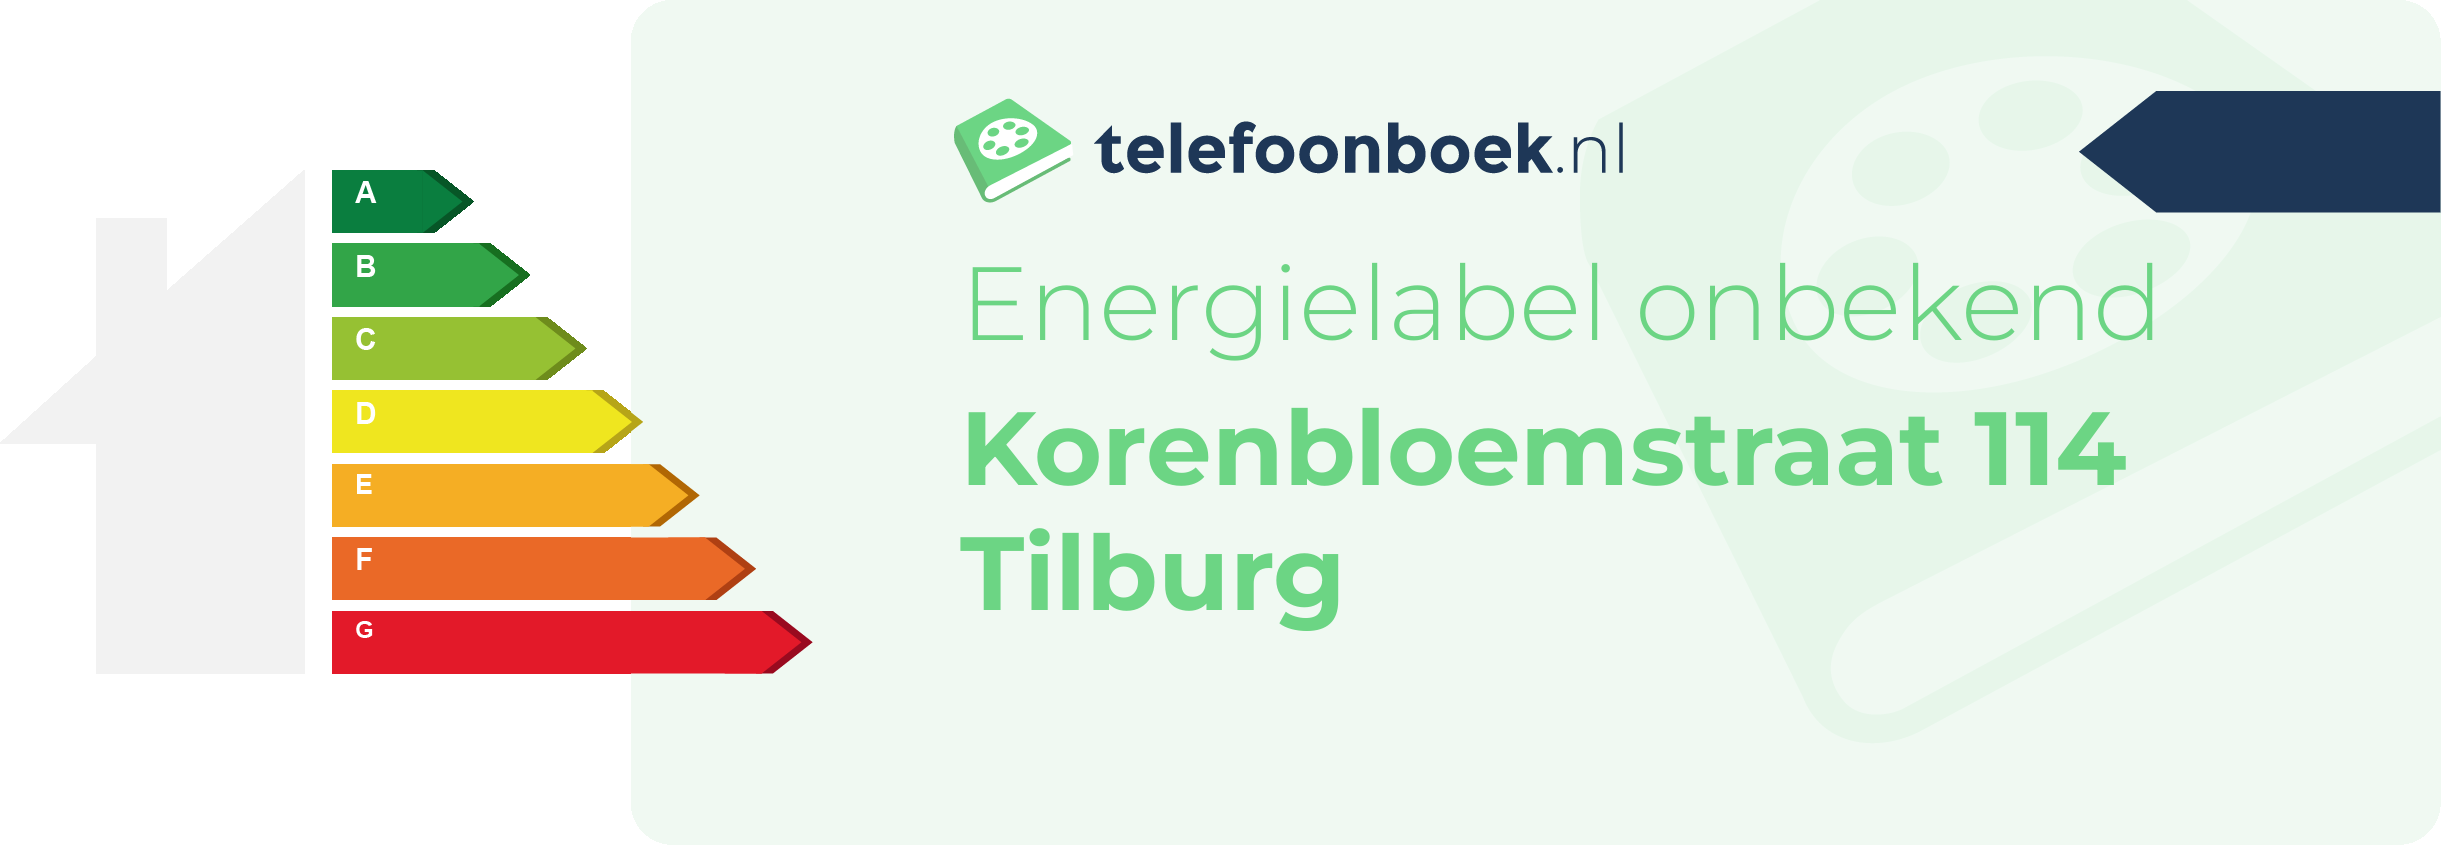 Energielabel Korenbloemstraat 114 Tilburg